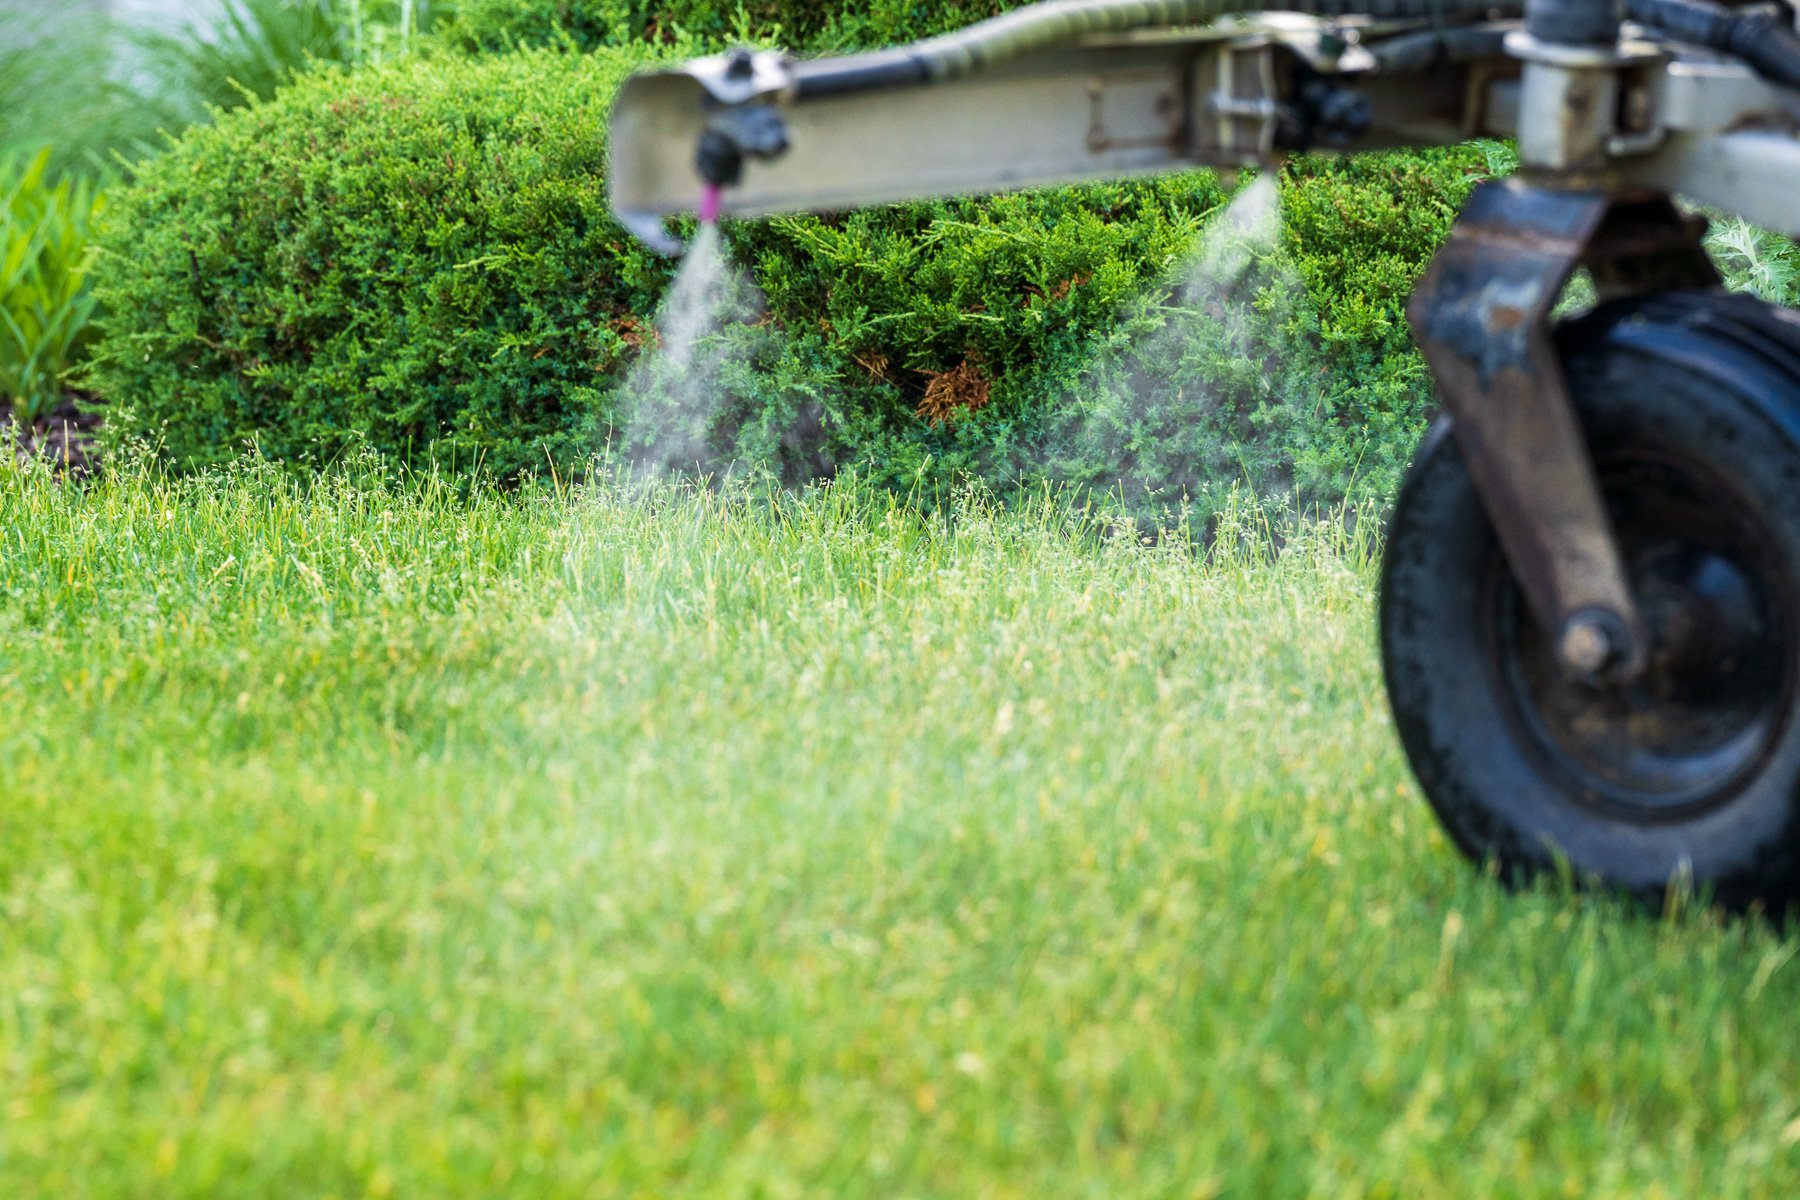 liquid fertilizer sprayed on grass